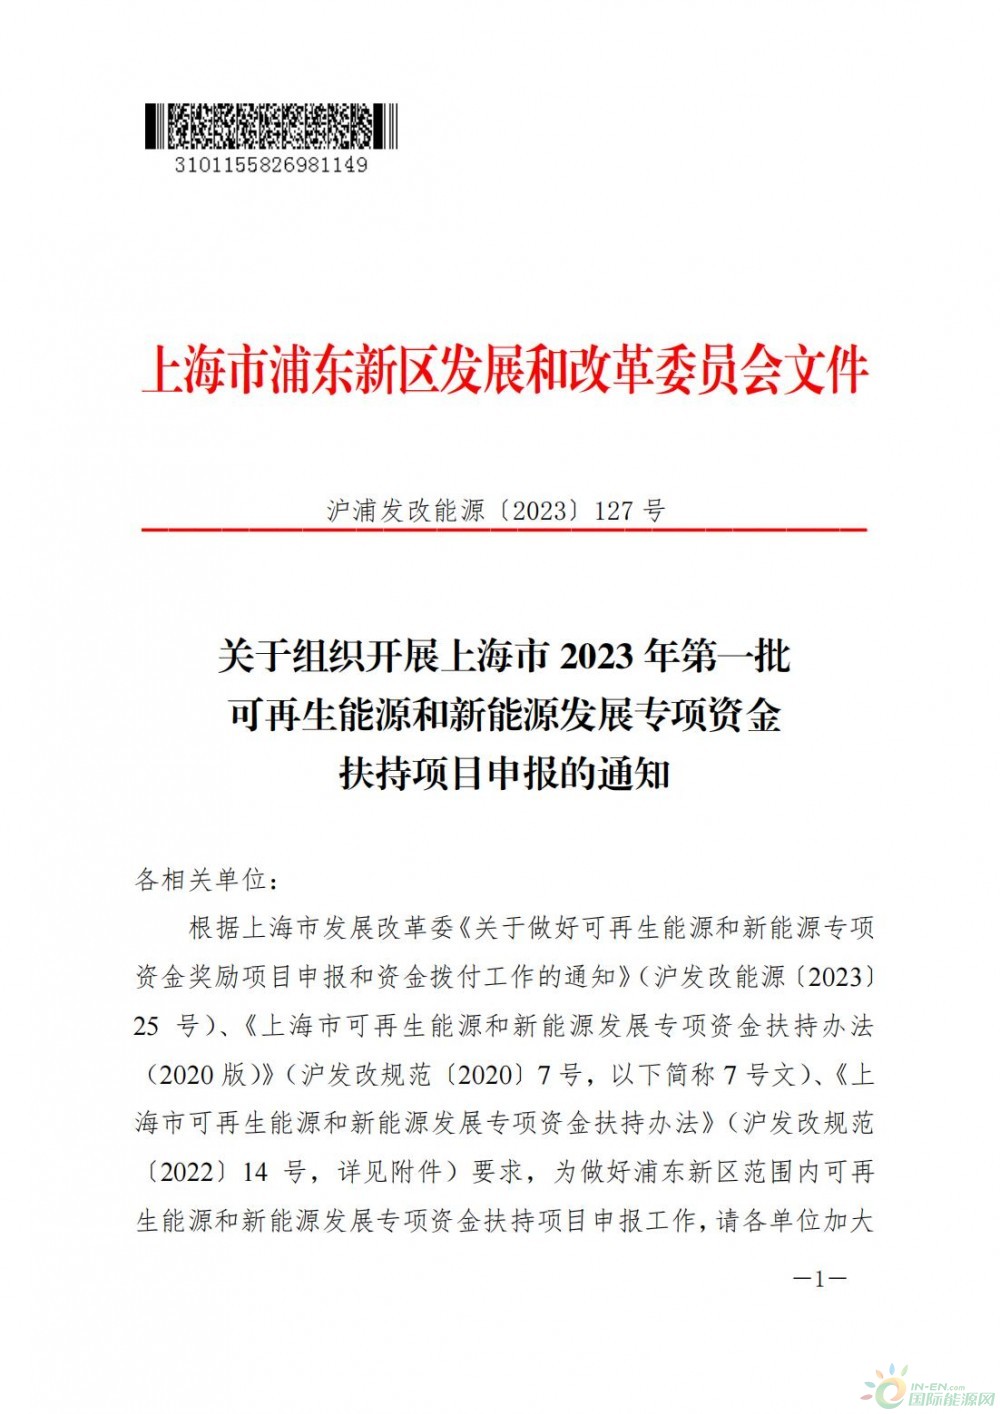 上海浦东新区2023年第一批海上风电项目补贴资金开始申报啦！